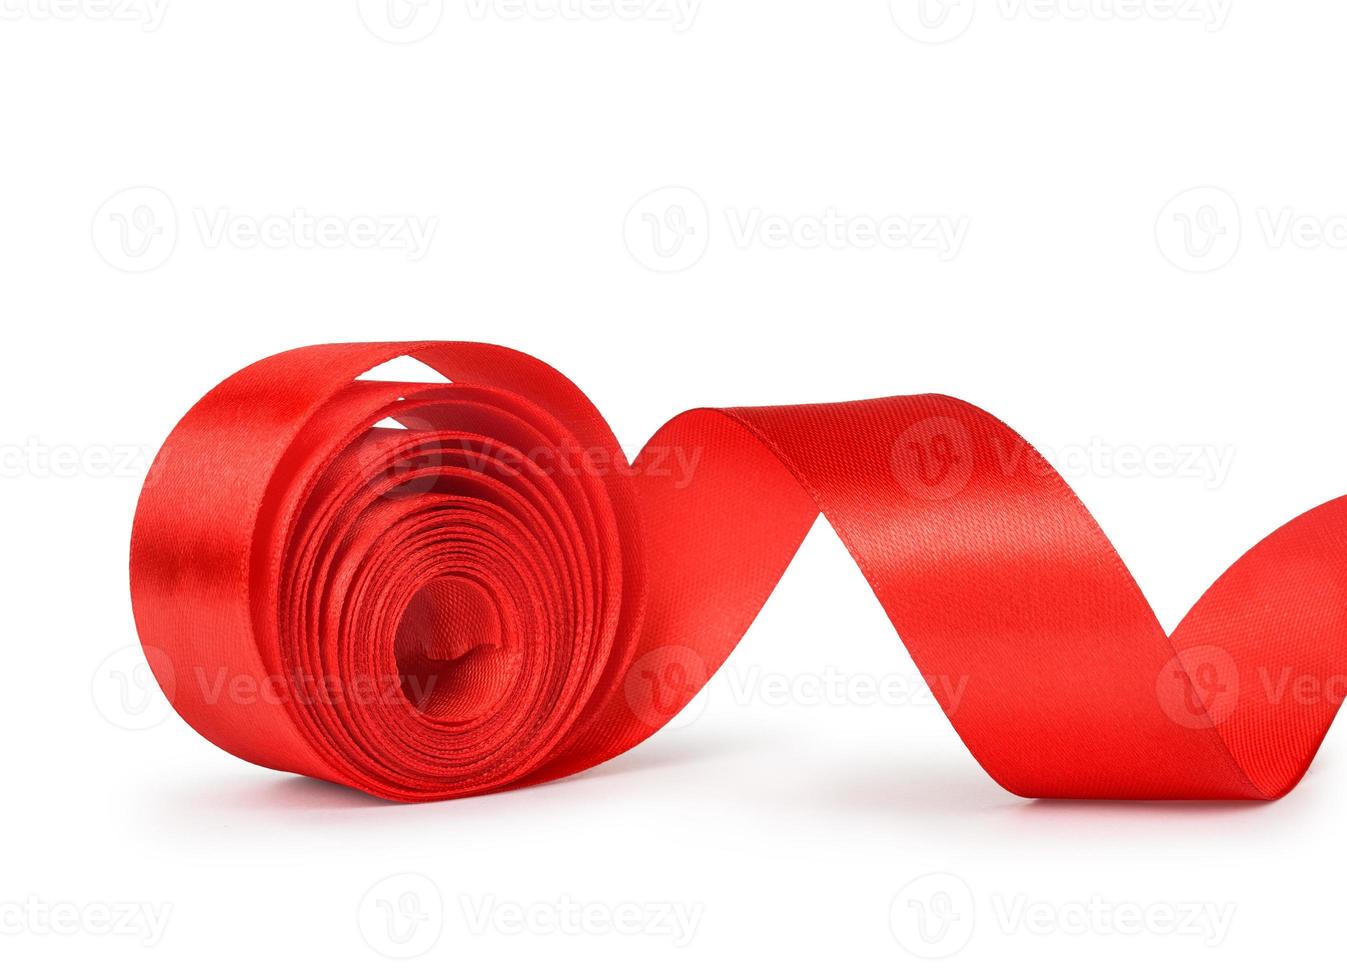 el rollo desenrollado de cinta roja foto